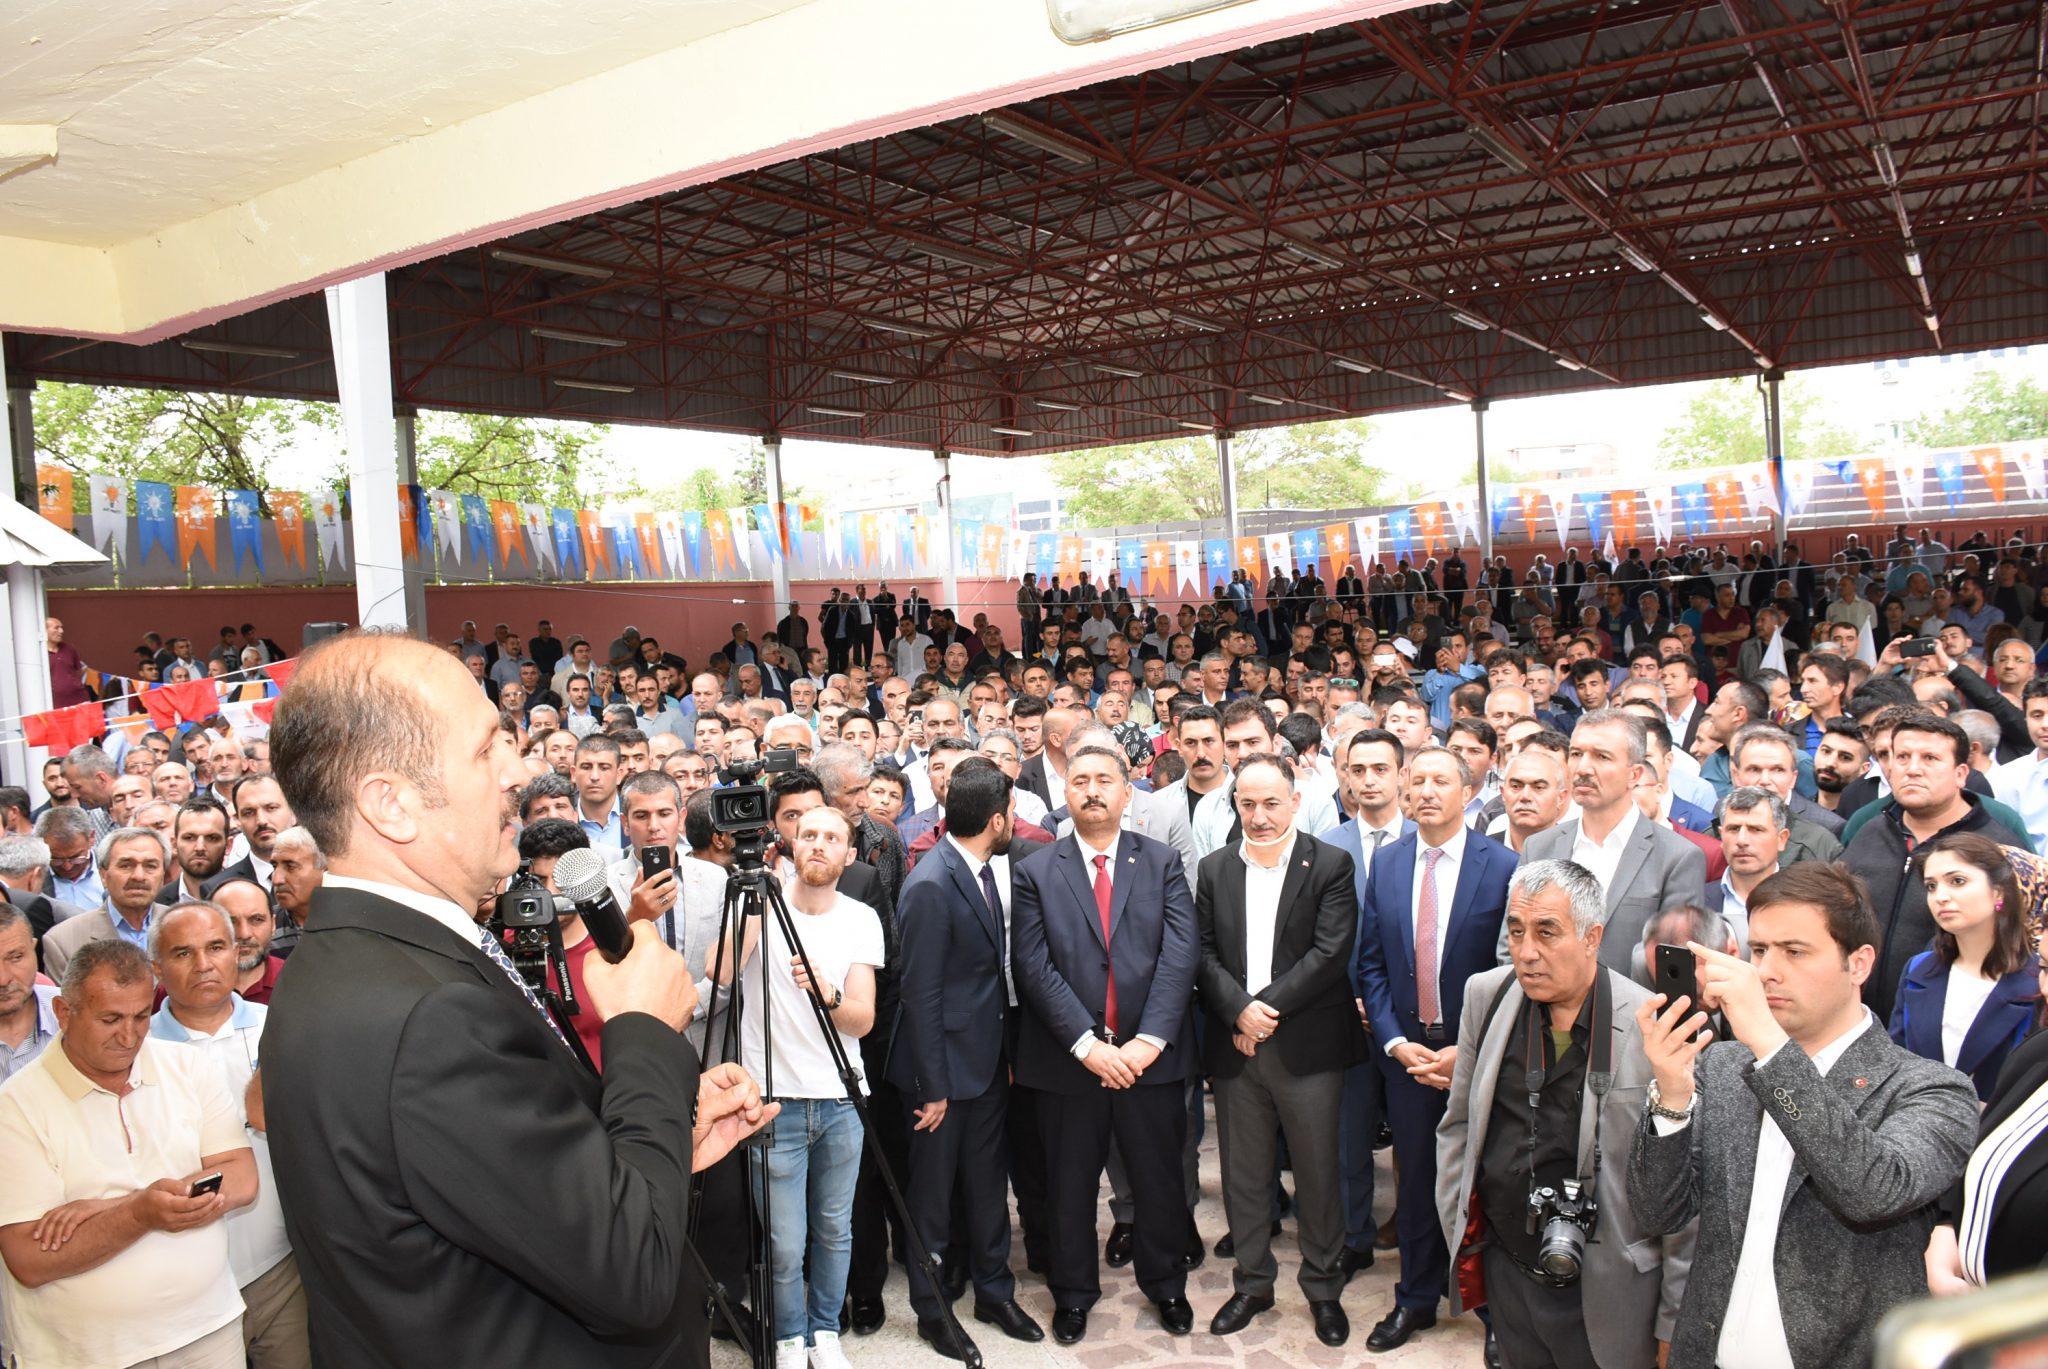 AK Partili adaylardan 3-0 sözü - Kırıkkale Haber, Son Dakika Kırıkkale Haberleri